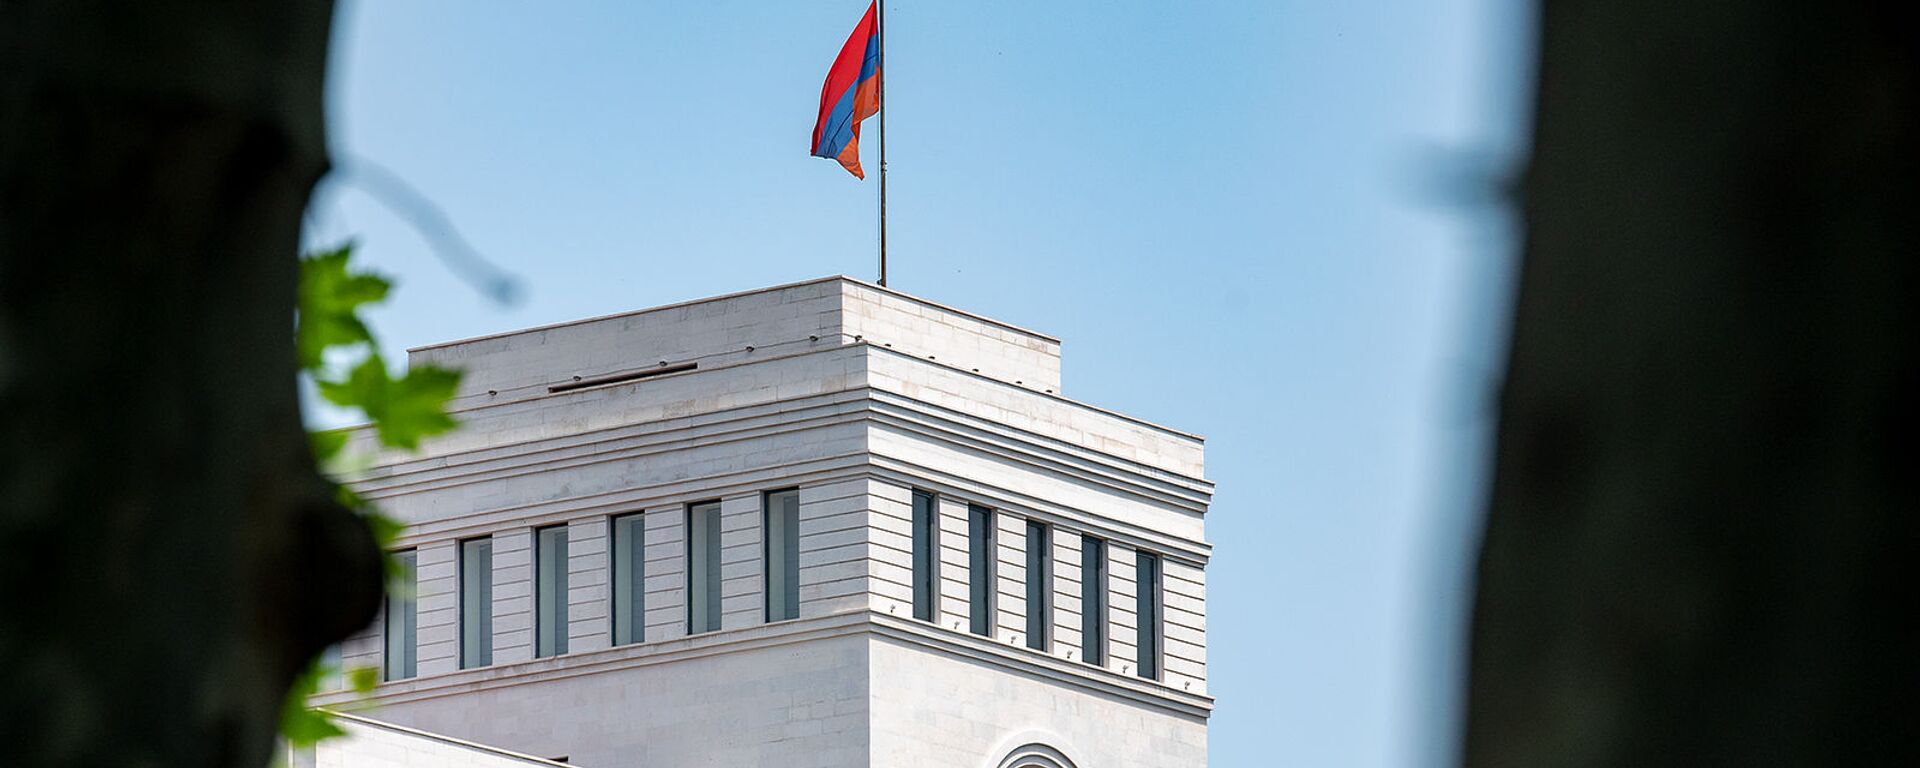 Здание Министерства иностранных дел Армении - Sputnik Армения, 1920, 13.07.2021